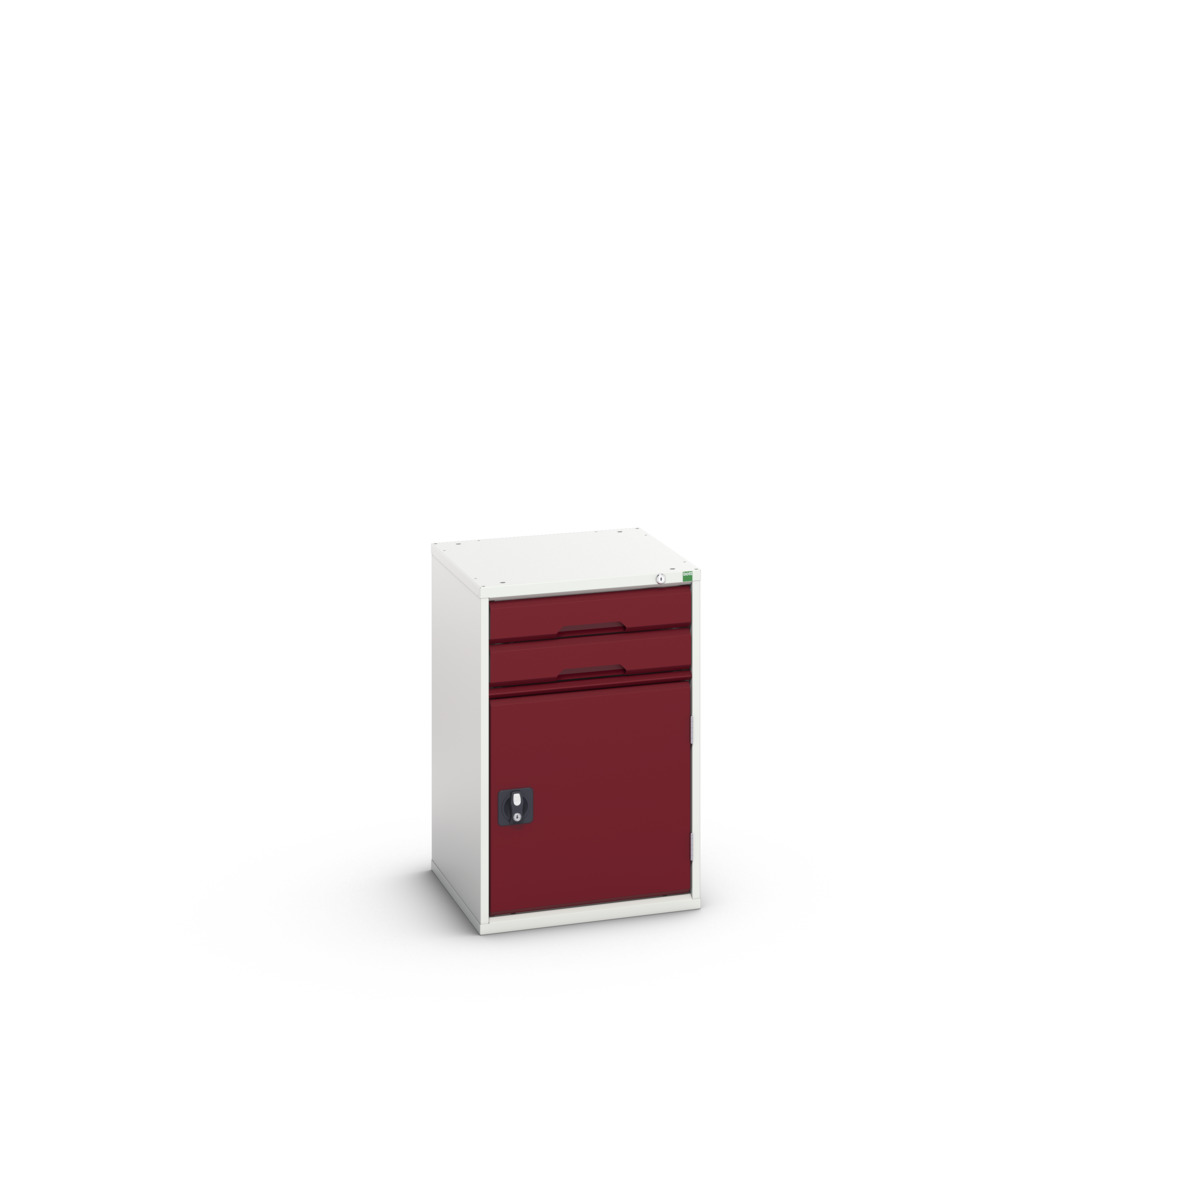 16925016.24 - verso drawer-door cabinet